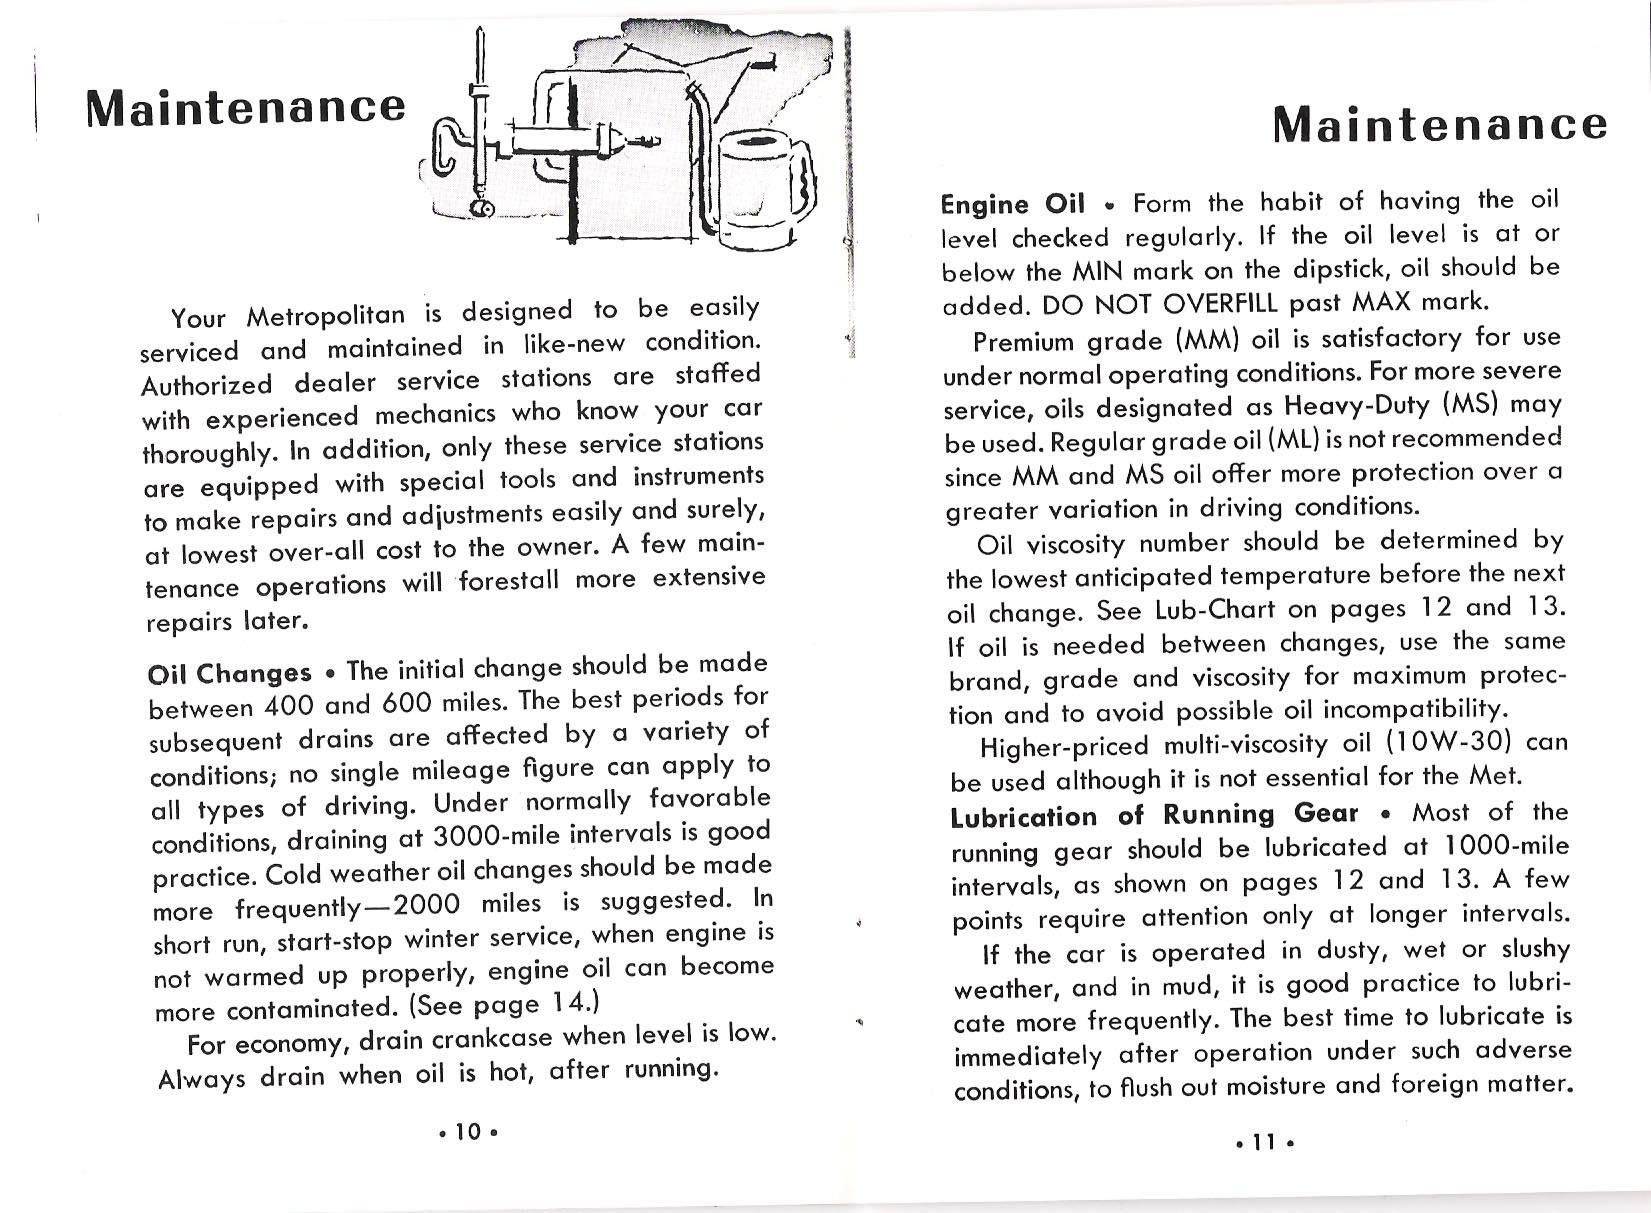 1957 Metropolitan Owners Manual-10-11